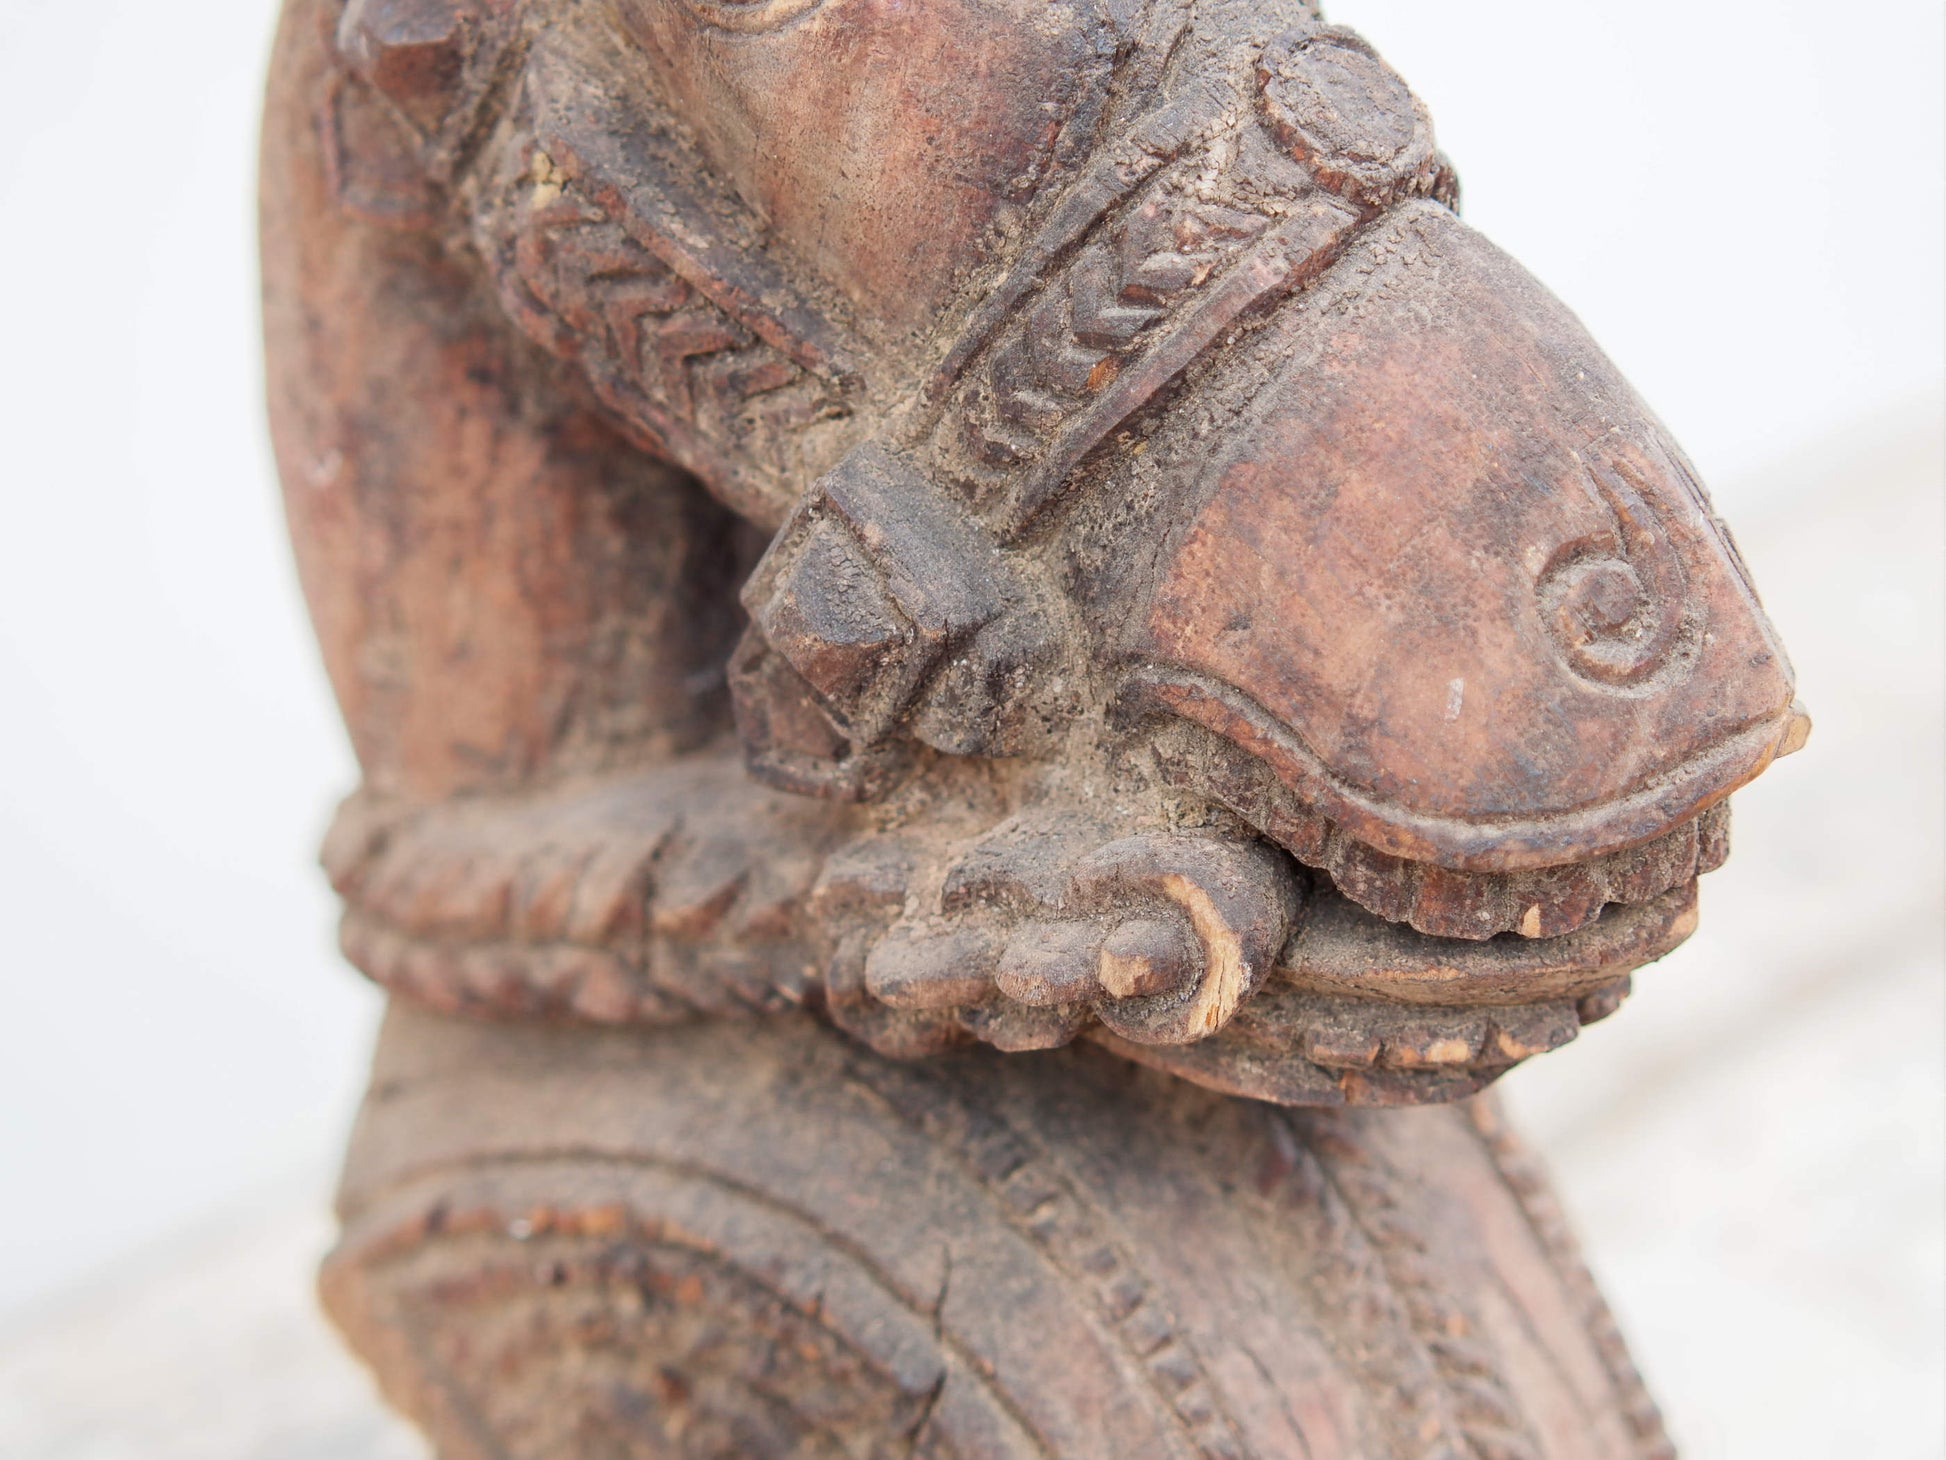 Antica statua indiana raffigurante un cavallo in legno di teak inciso con basamento in metallo. Si nota la patina del tempo e l'usura naturale dell'oggetto. Unico e conservato perfettamente é databile primi 900. dimensioni 15x33 h44cm